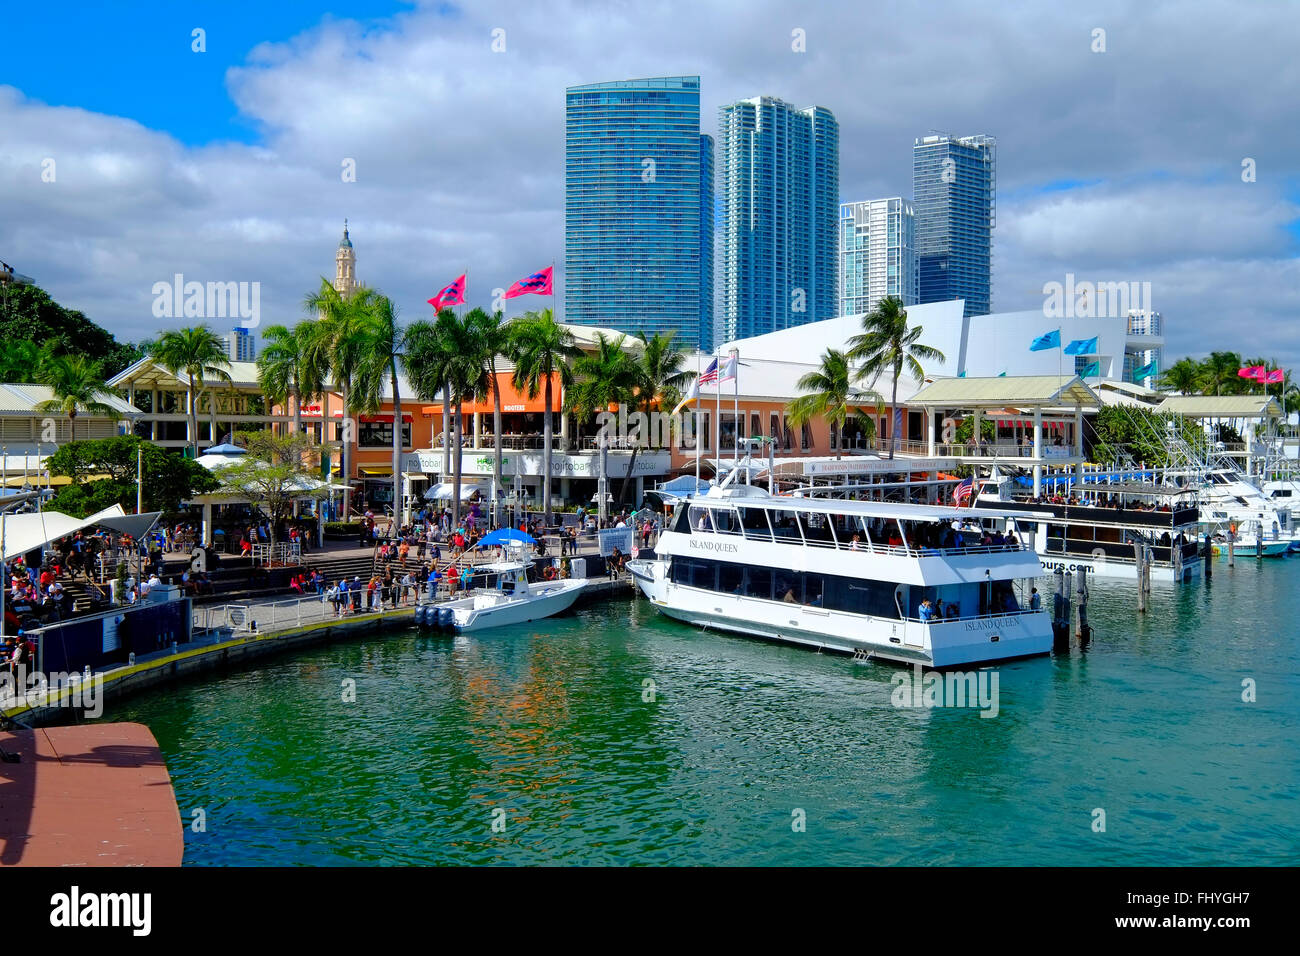 Port de Miami FL Floride nord-américaine appelle Americana Attraction Architecture villes Ville Paysage urbain jour Downtown Holiday Banque D'Images